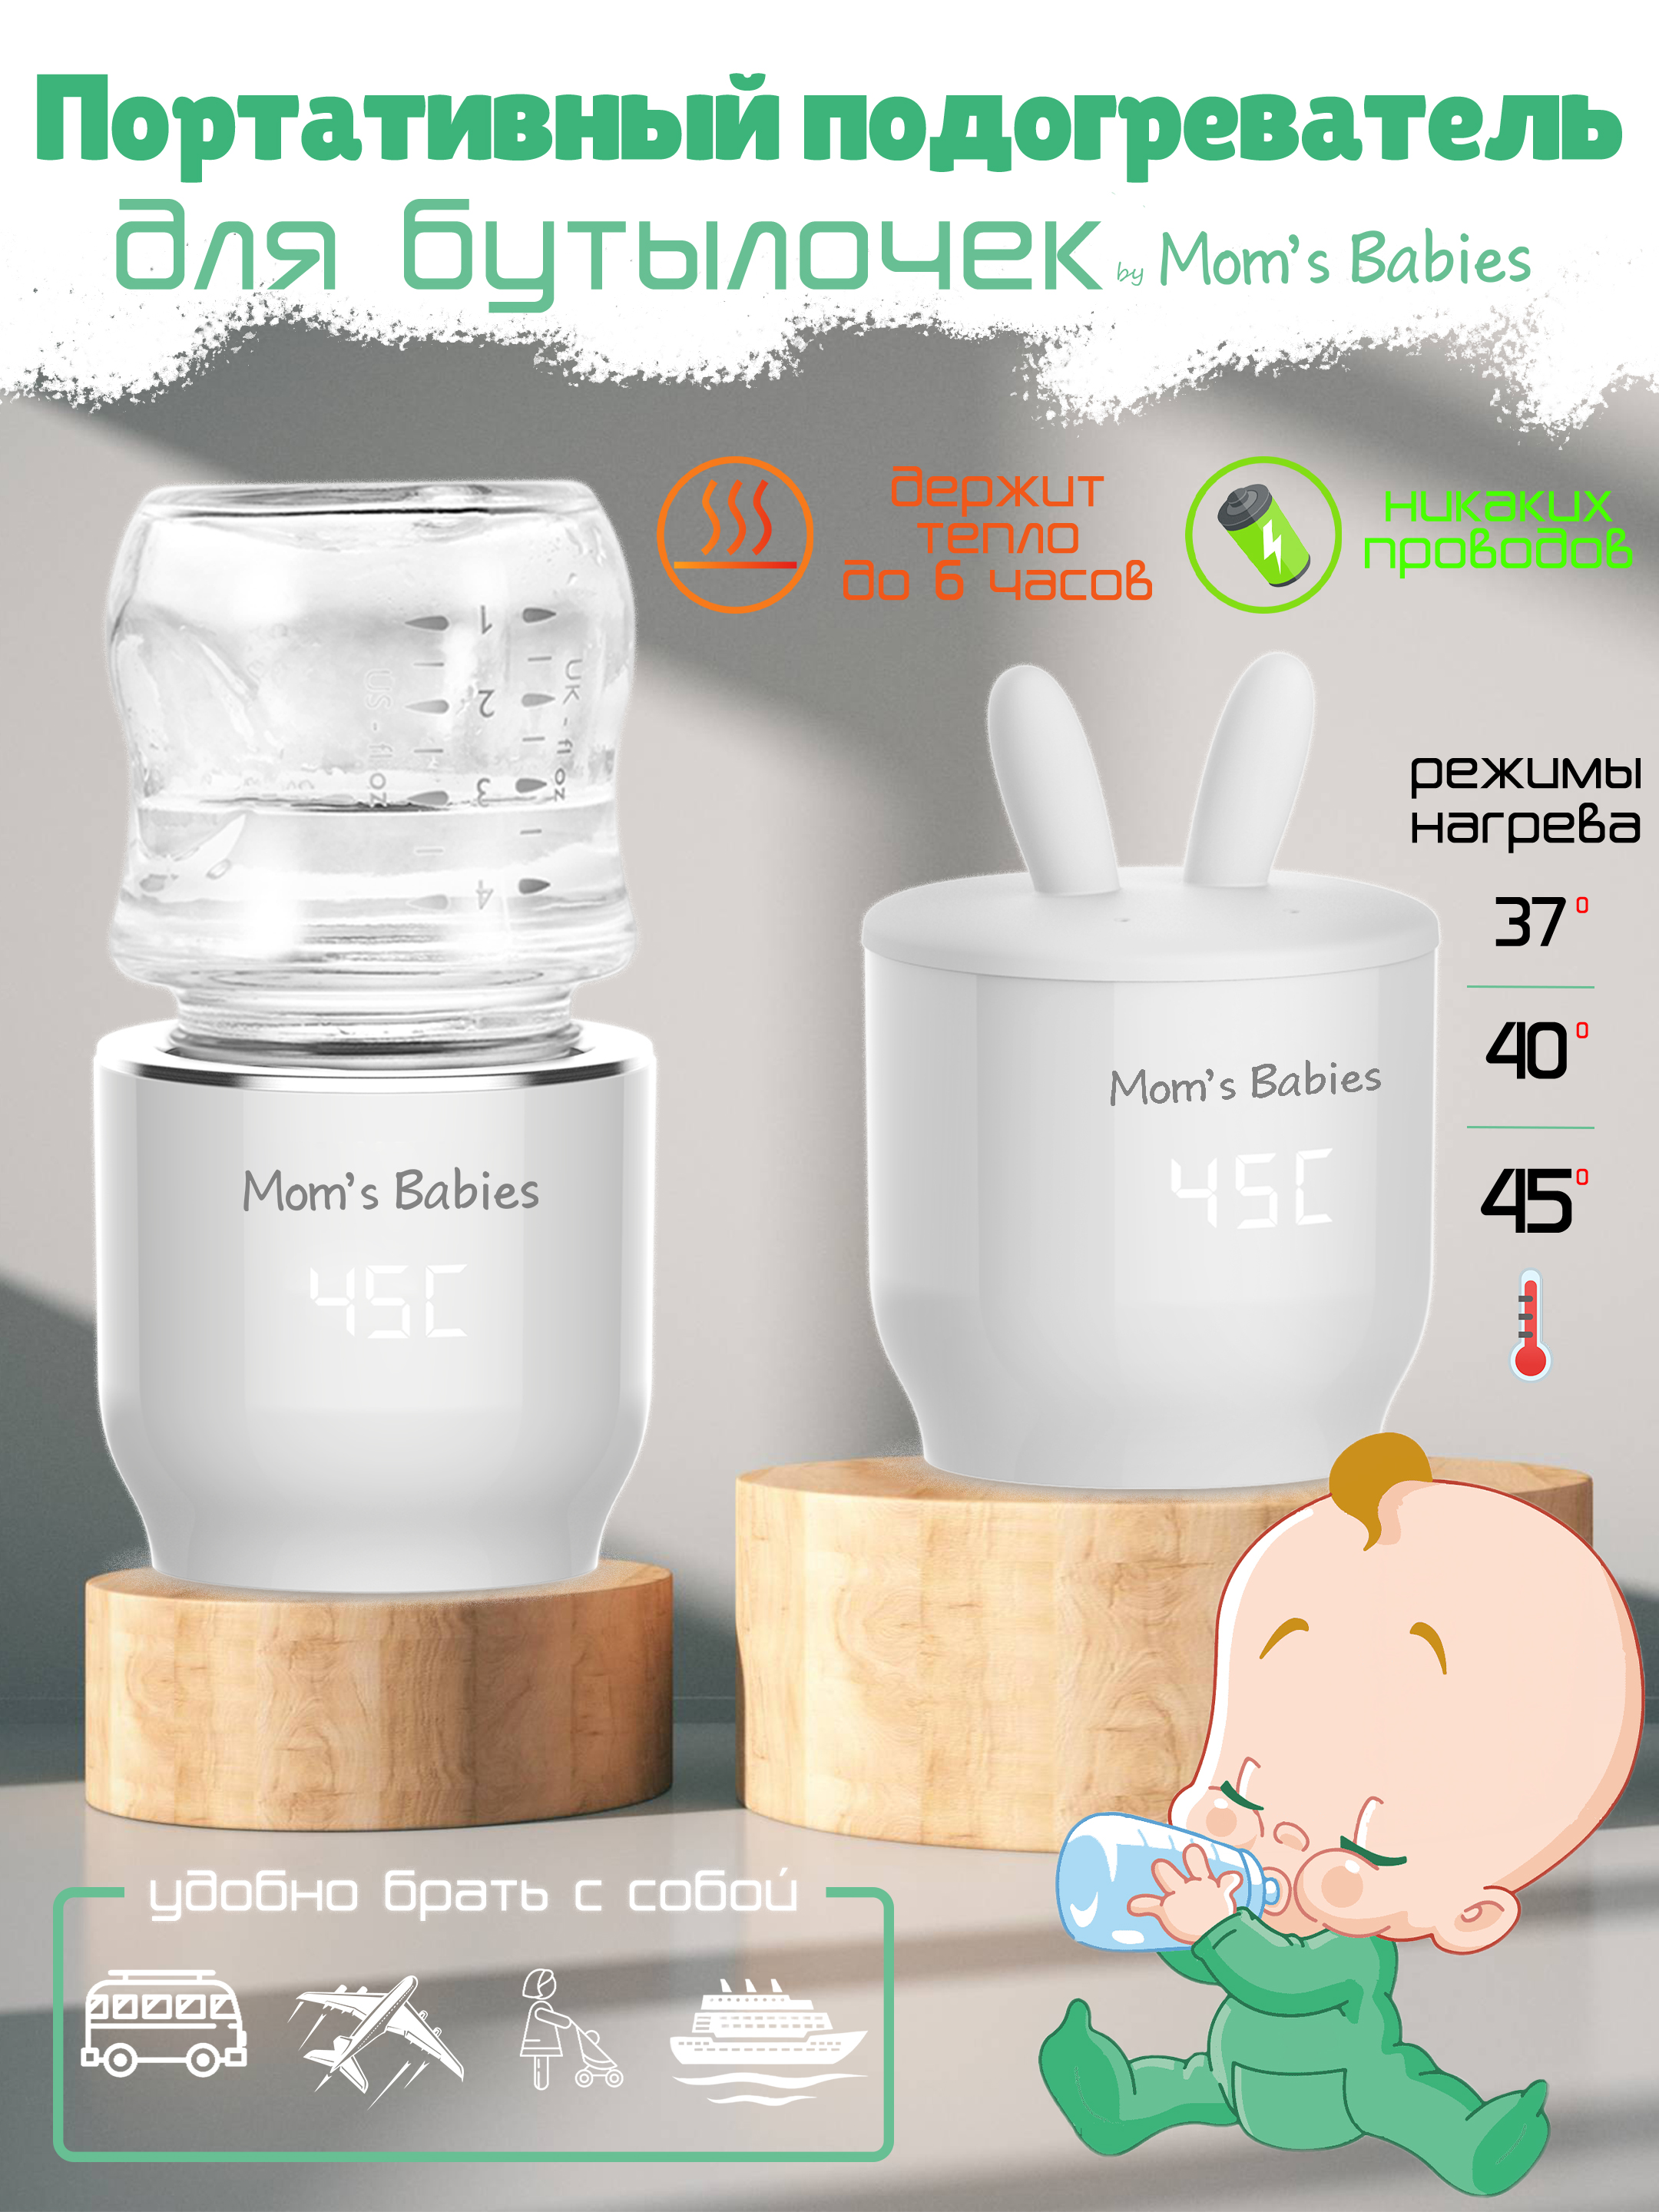 Портативный подогреватель Mom's Babies FS01 для бутылочек и детского питания белый сушилка для детских бутылочек белый голубой